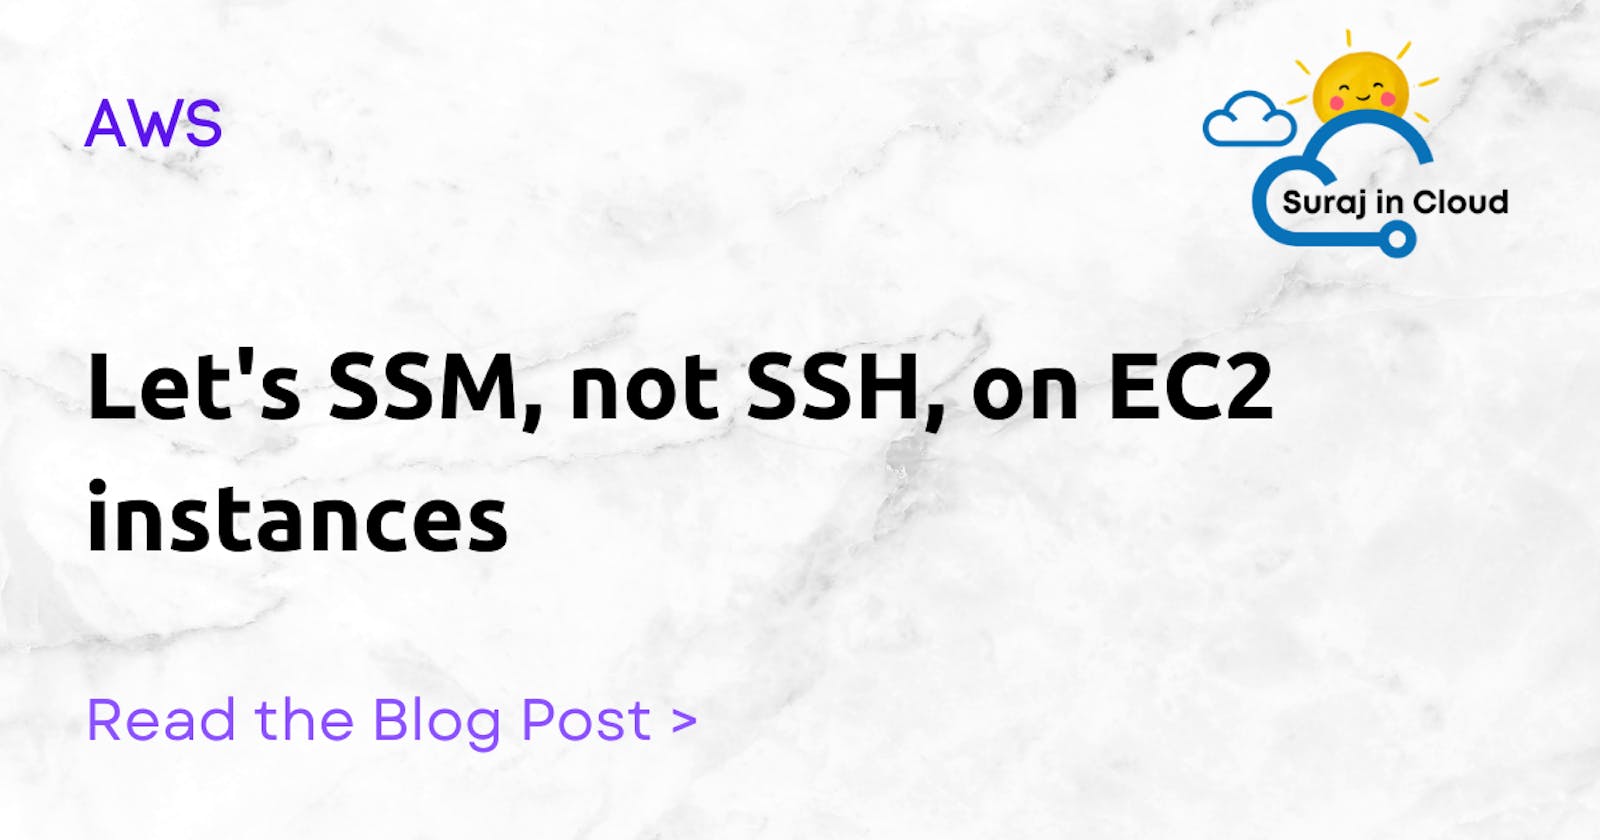 Let's SSM, not SSH, on EC2 instances